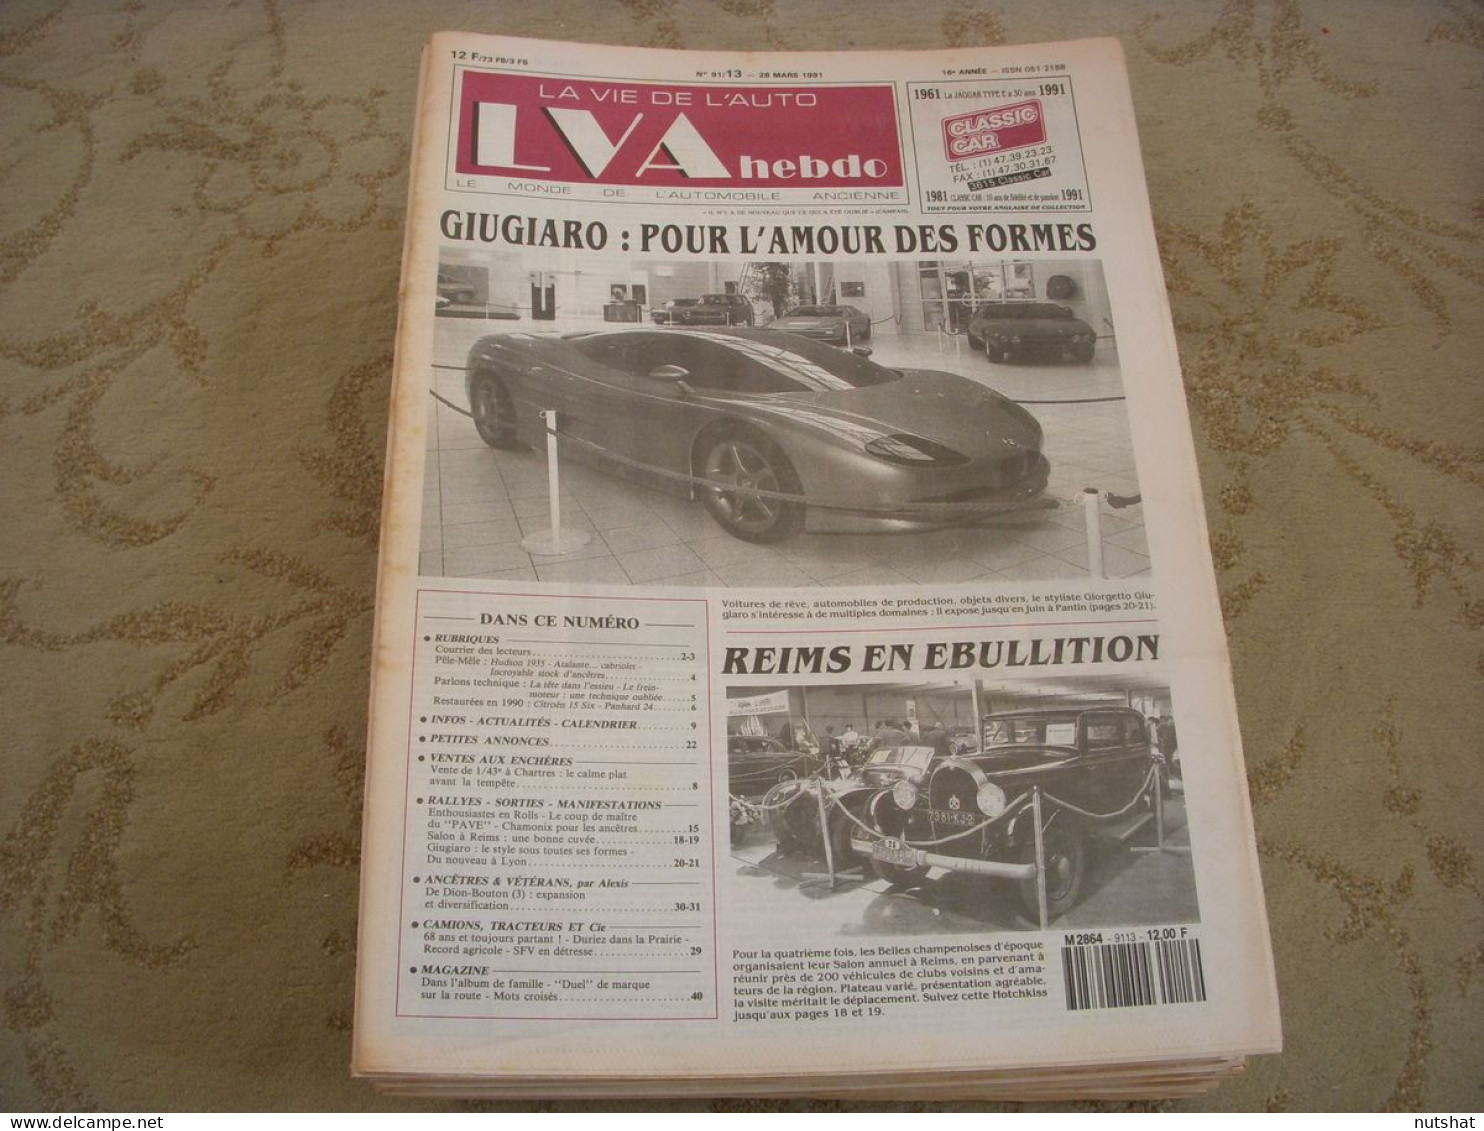 LVA VIE De L'AUTO 91/13 03.1991 De DION BOUTON CAMIONS TRACTEURS DURIEZ GIUGIARO - Auto/Motor